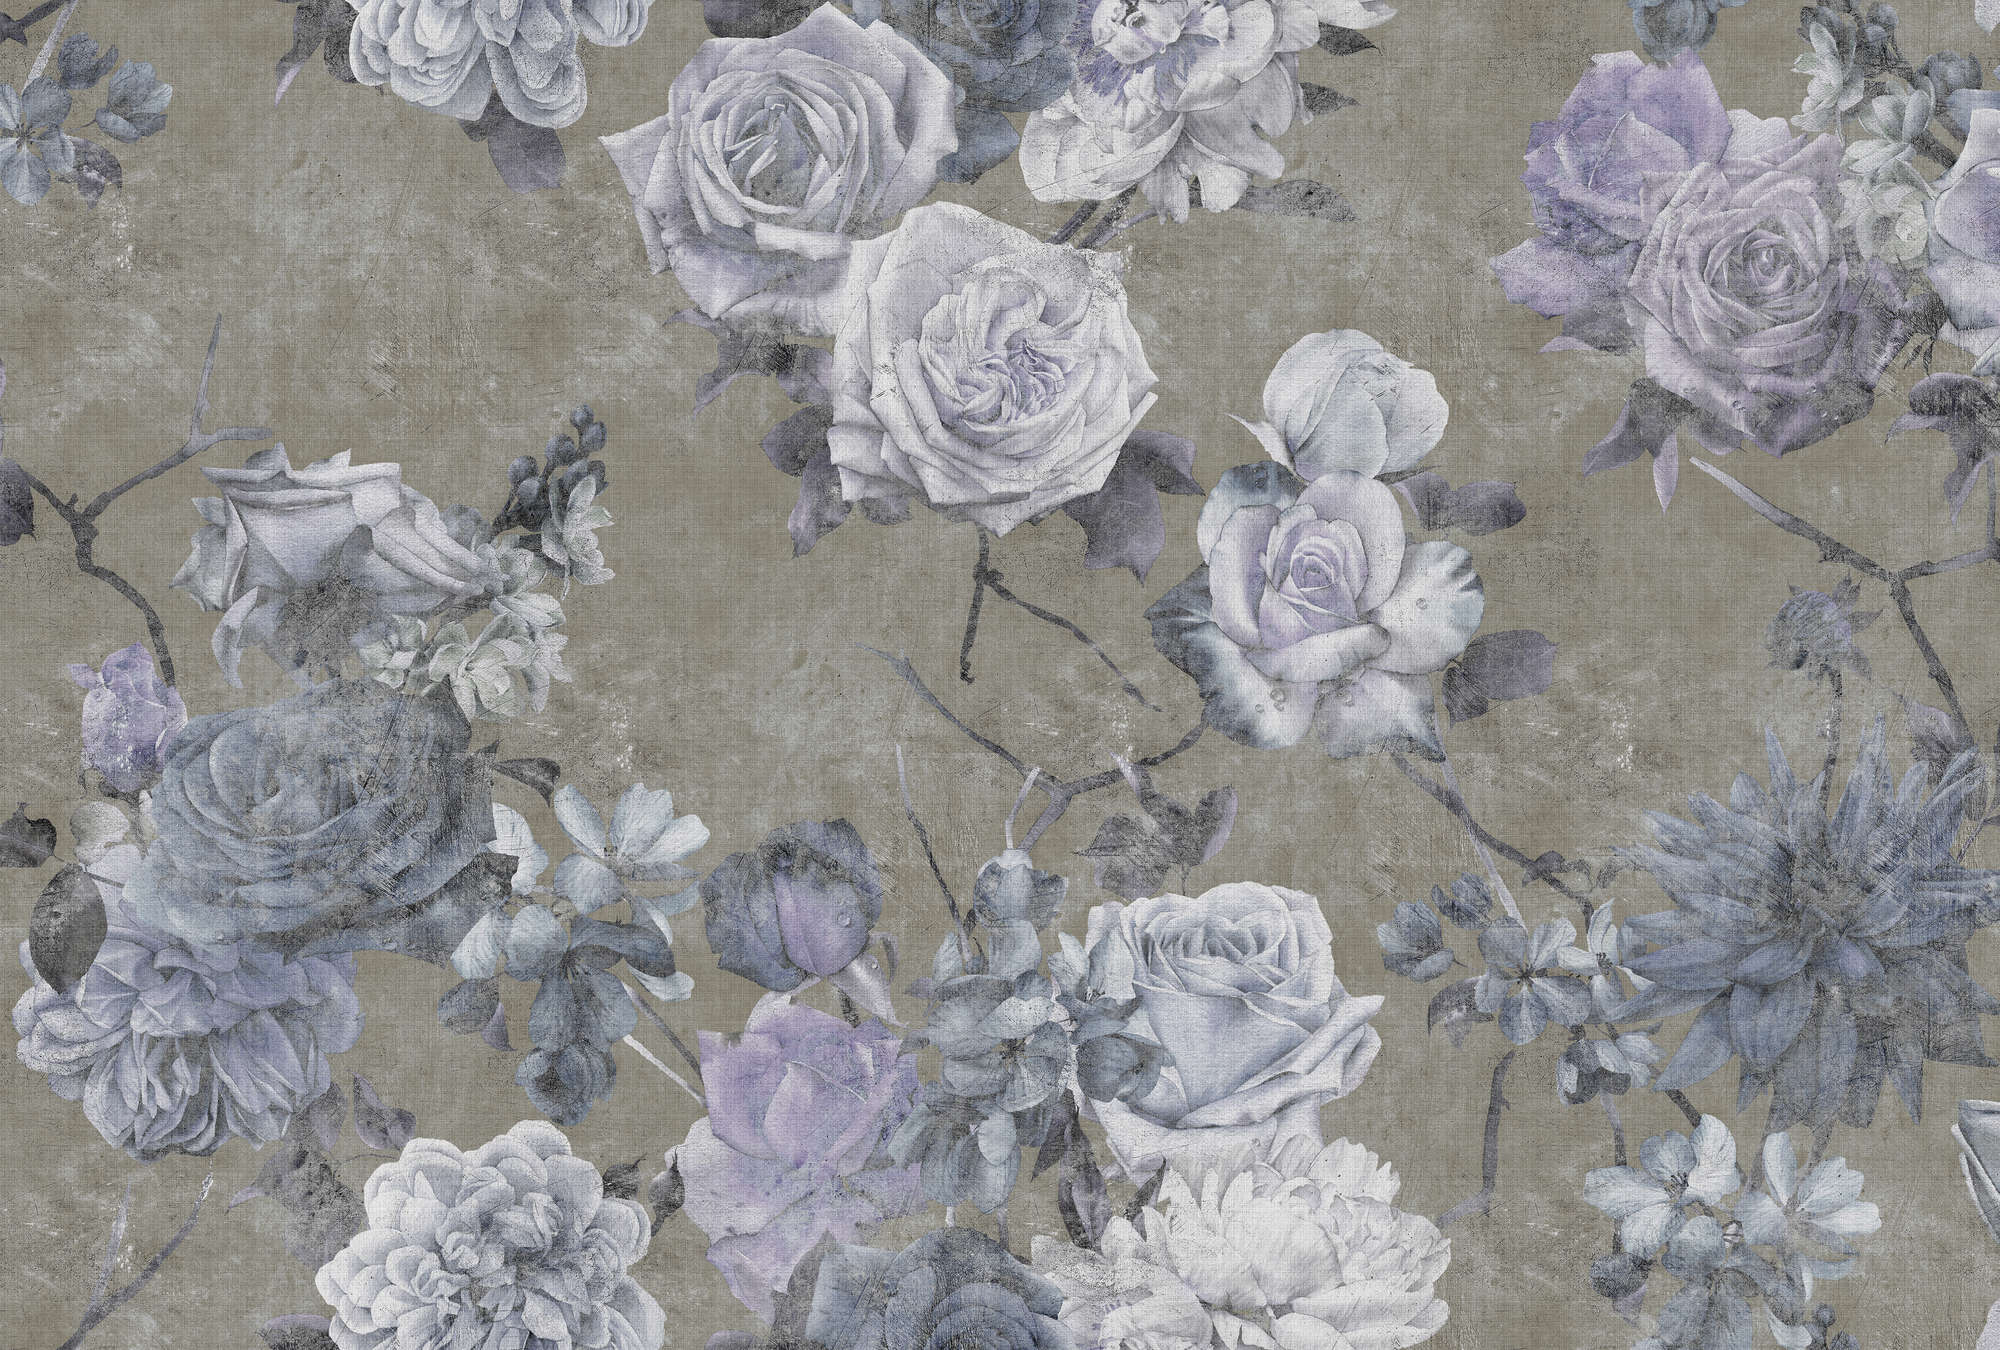             Bella Durmiente 1 - papel pintado en lino natural estructura flores de rosa en usado - azul, topo | estructura no tejido
        